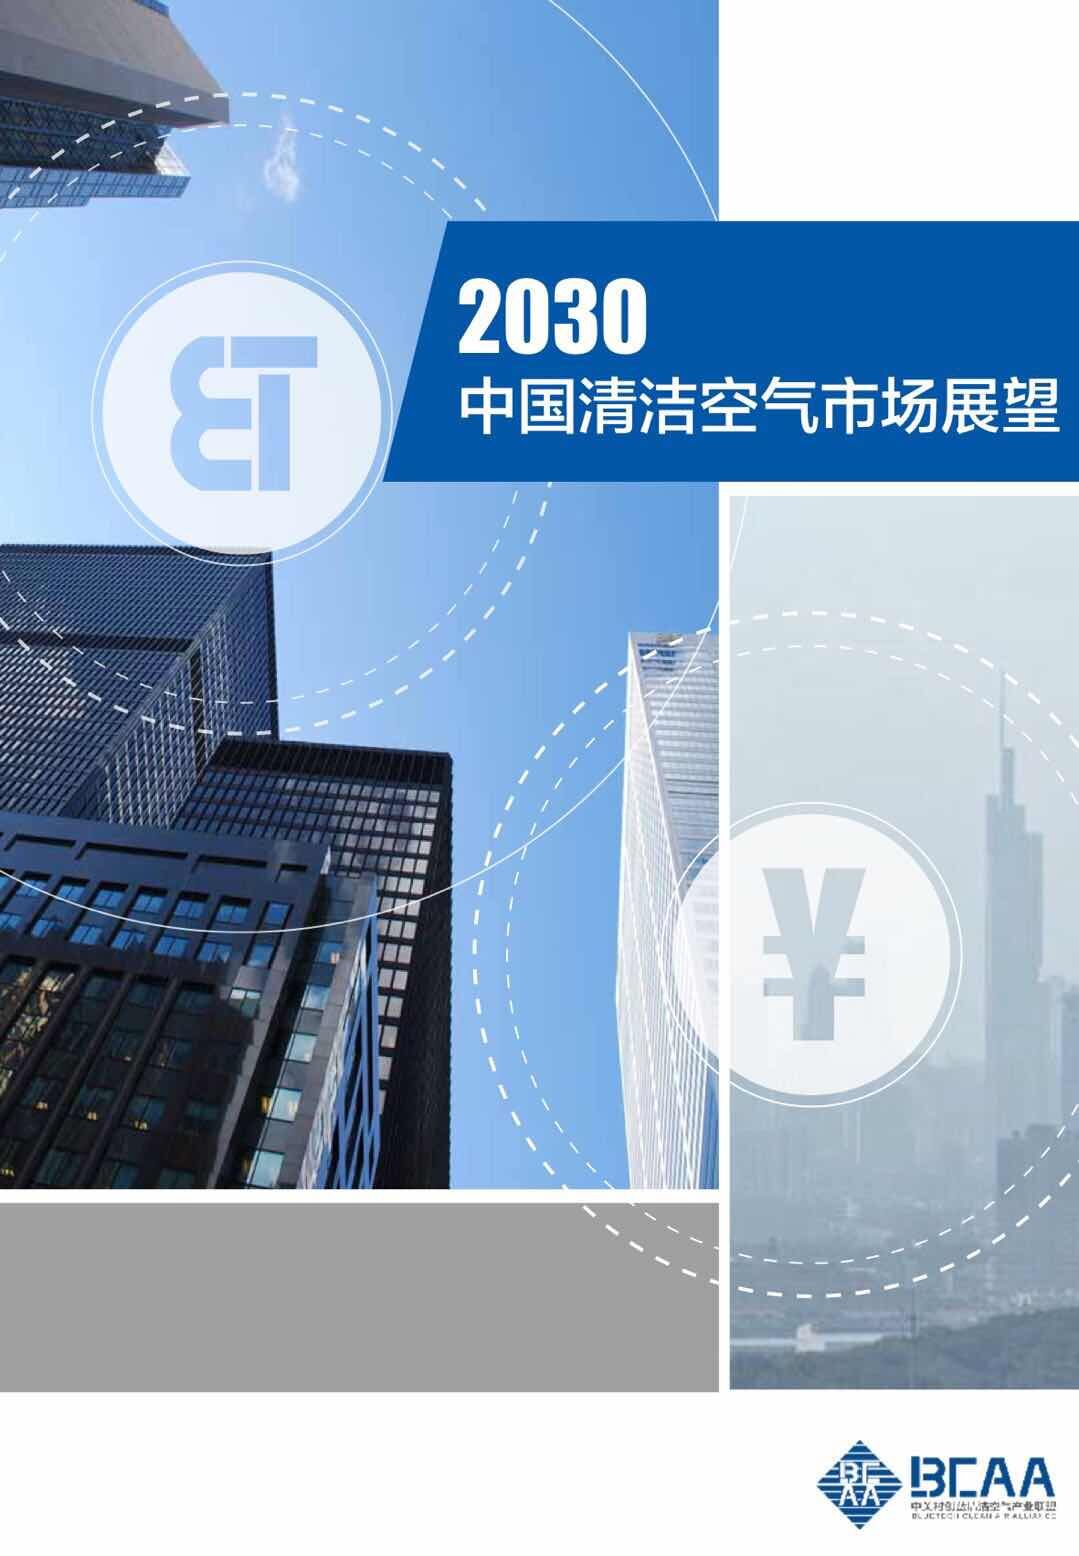 《2030中国清洁空气市场展望报告》发布